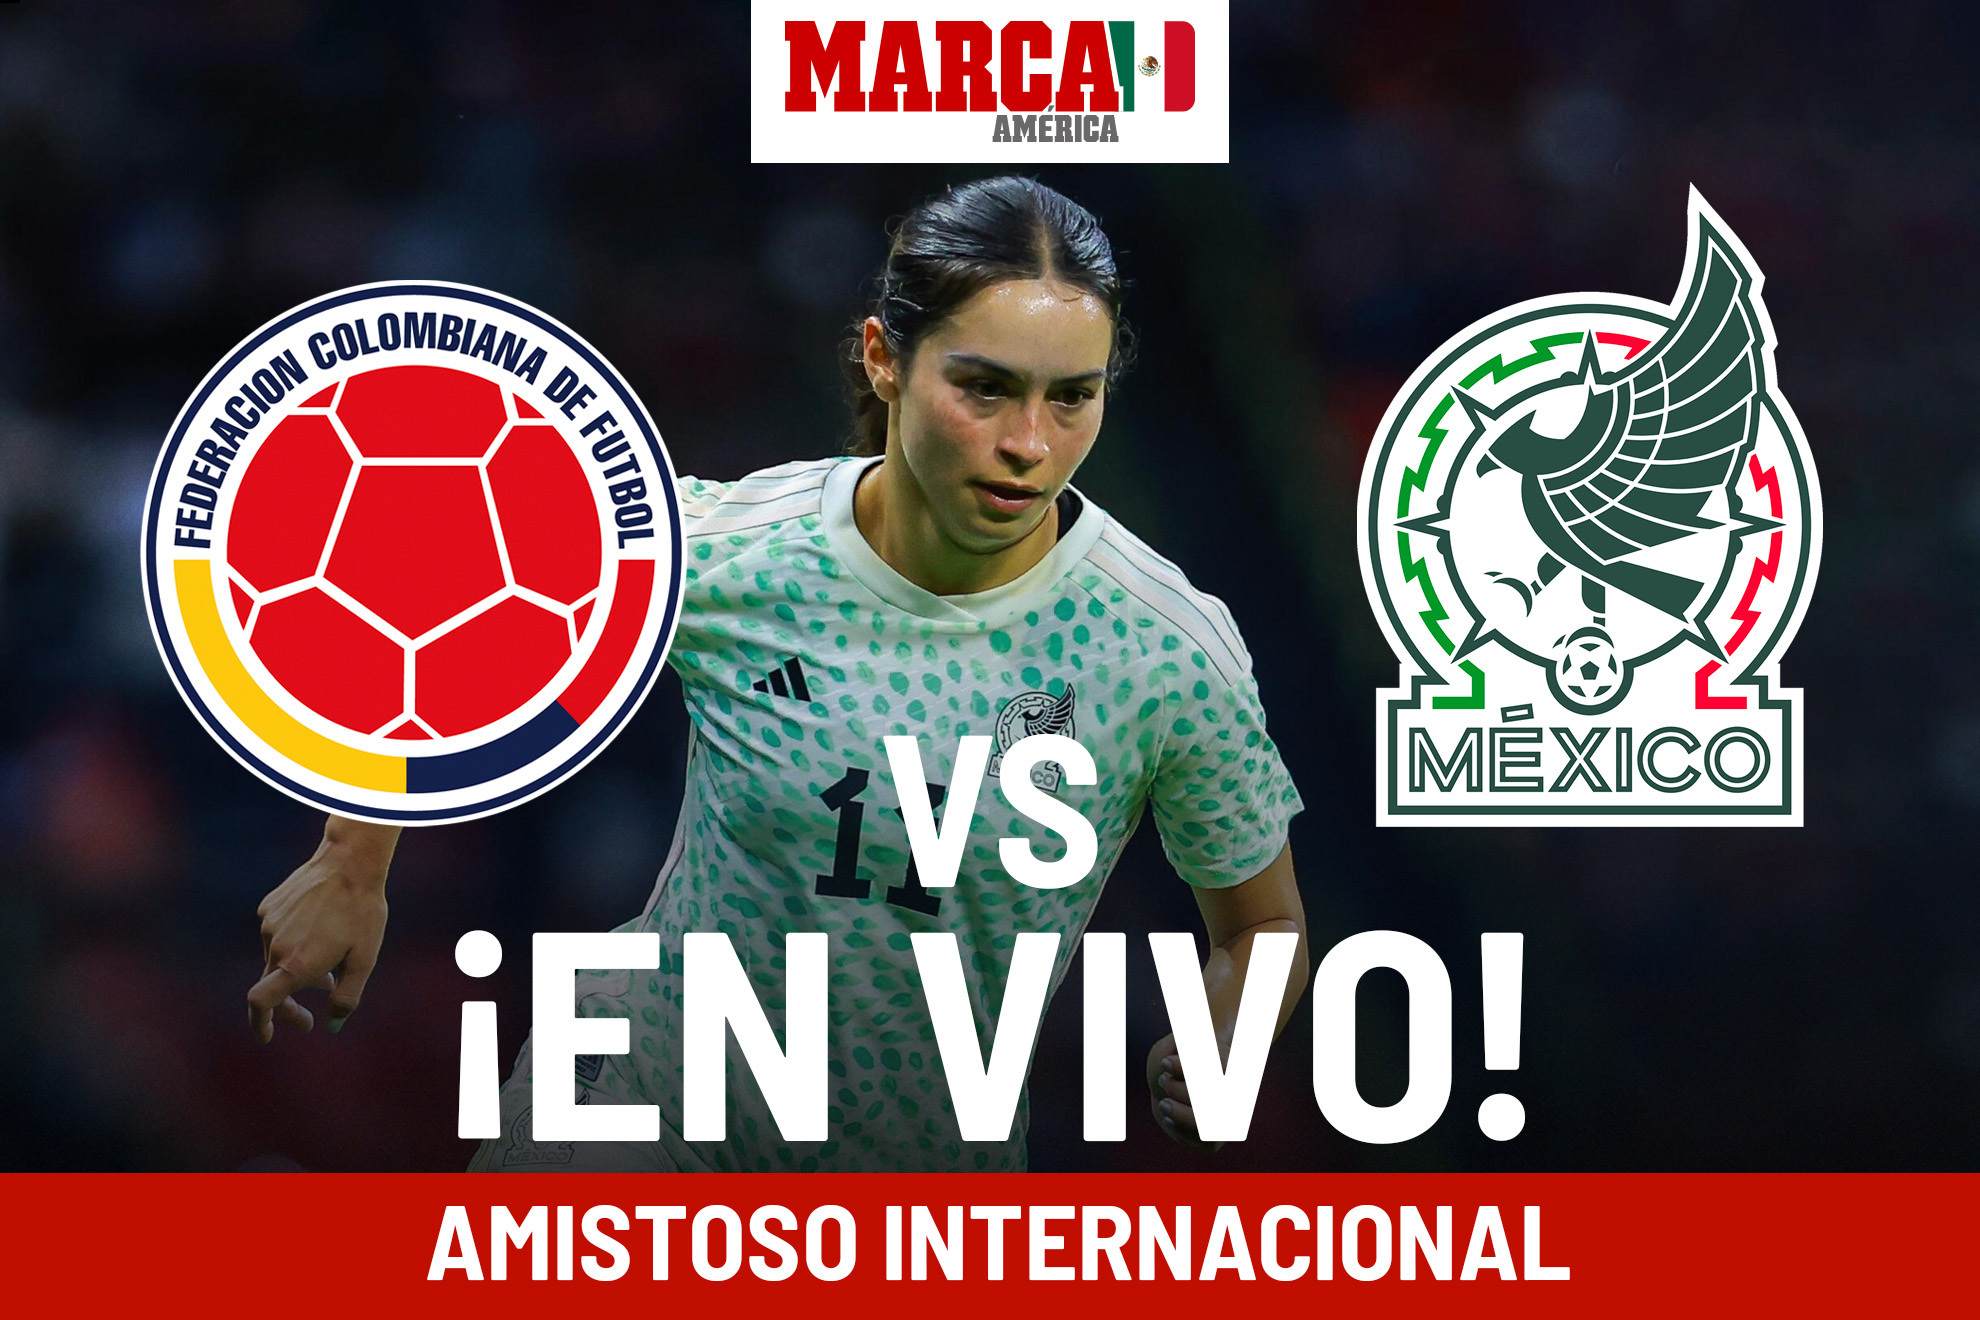 Mxico 0-1 Colombia Femenil EN VIVO Online. Mxico no sabe levantar y Colombia se lleva el triunfo en Orlando